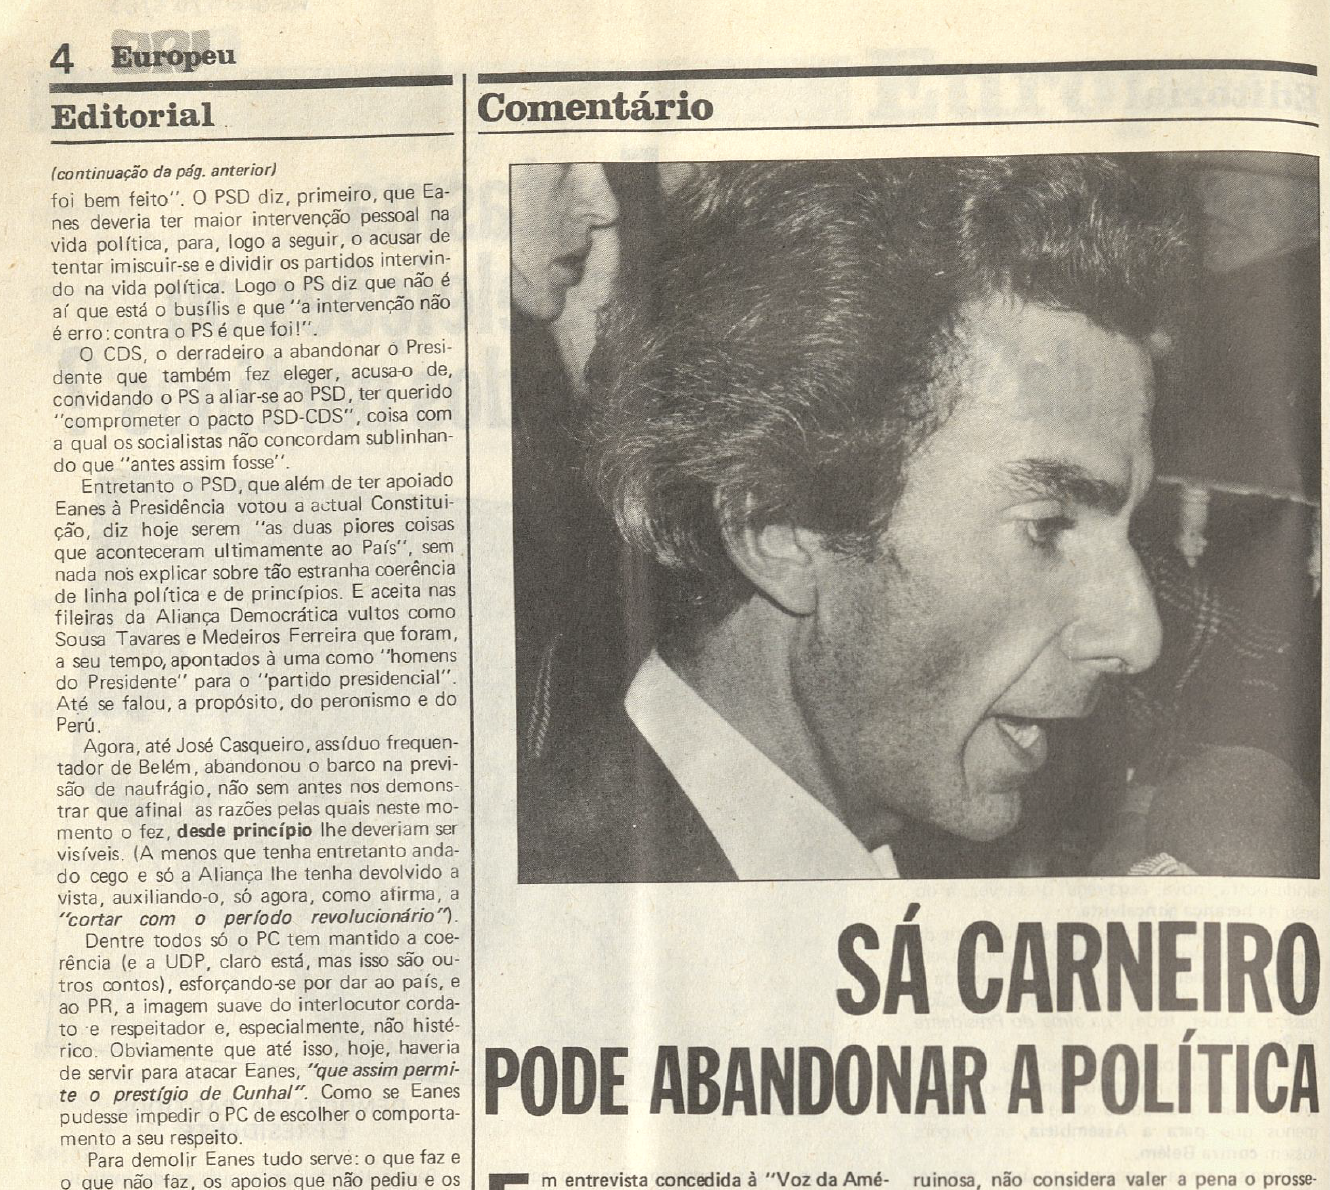 "Sá Carneiro pode abandonar a política"